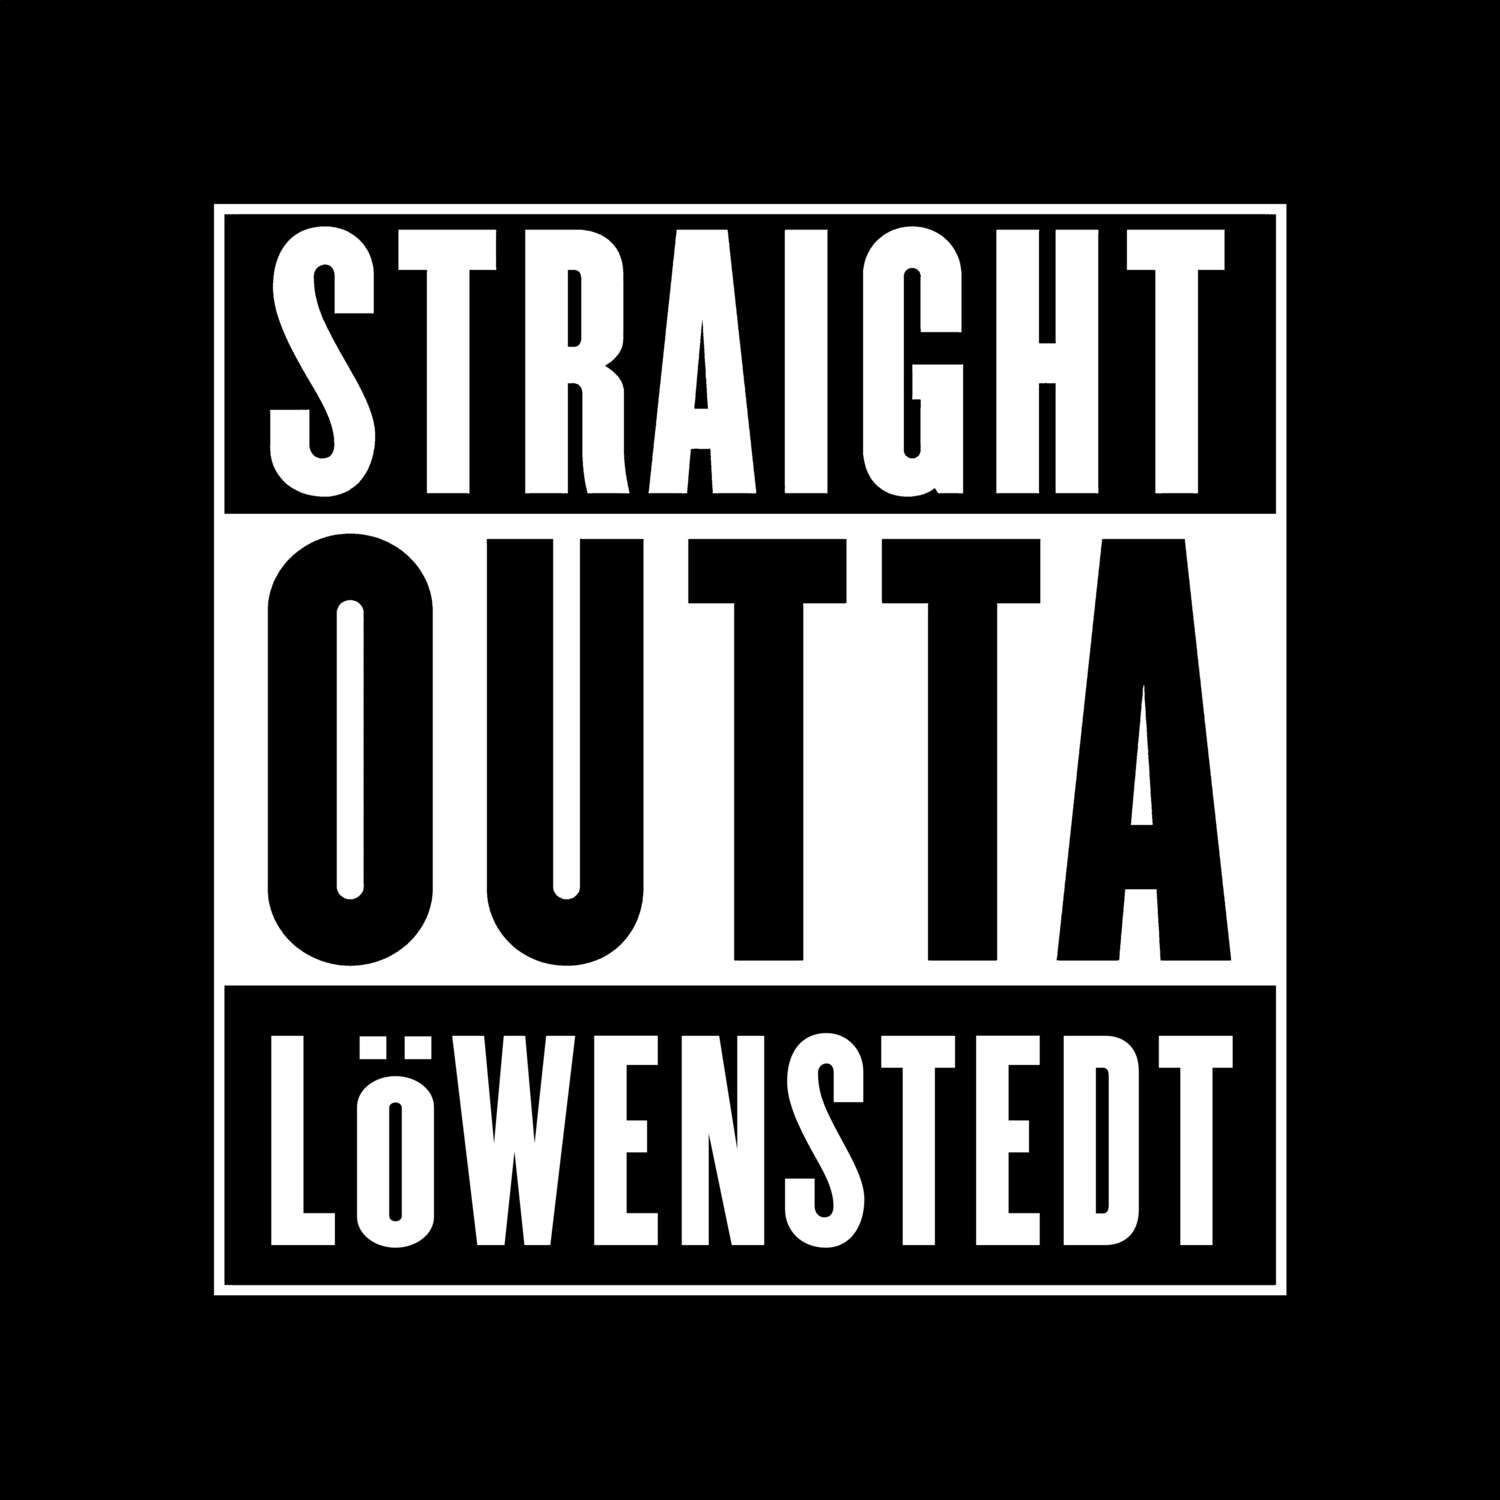 Löwenstedt T-Shirt »Straight Outta«